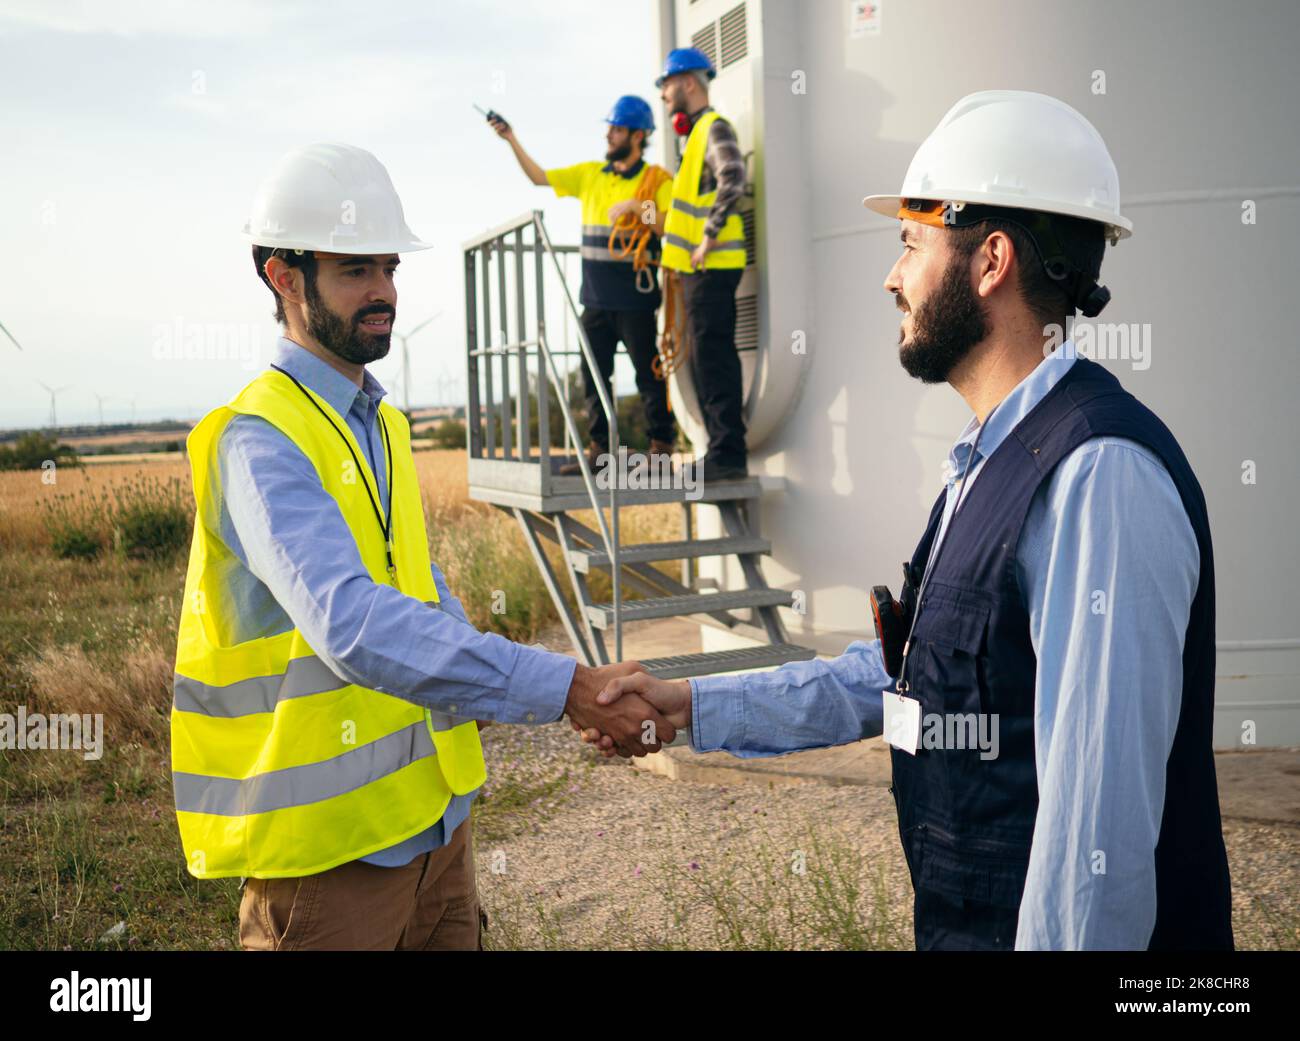 Deux ingénieurs masculins se secouent la main dans un champ de moulins à vent. Accord, énergies renouvelables, transition énergétique Banque D'Images